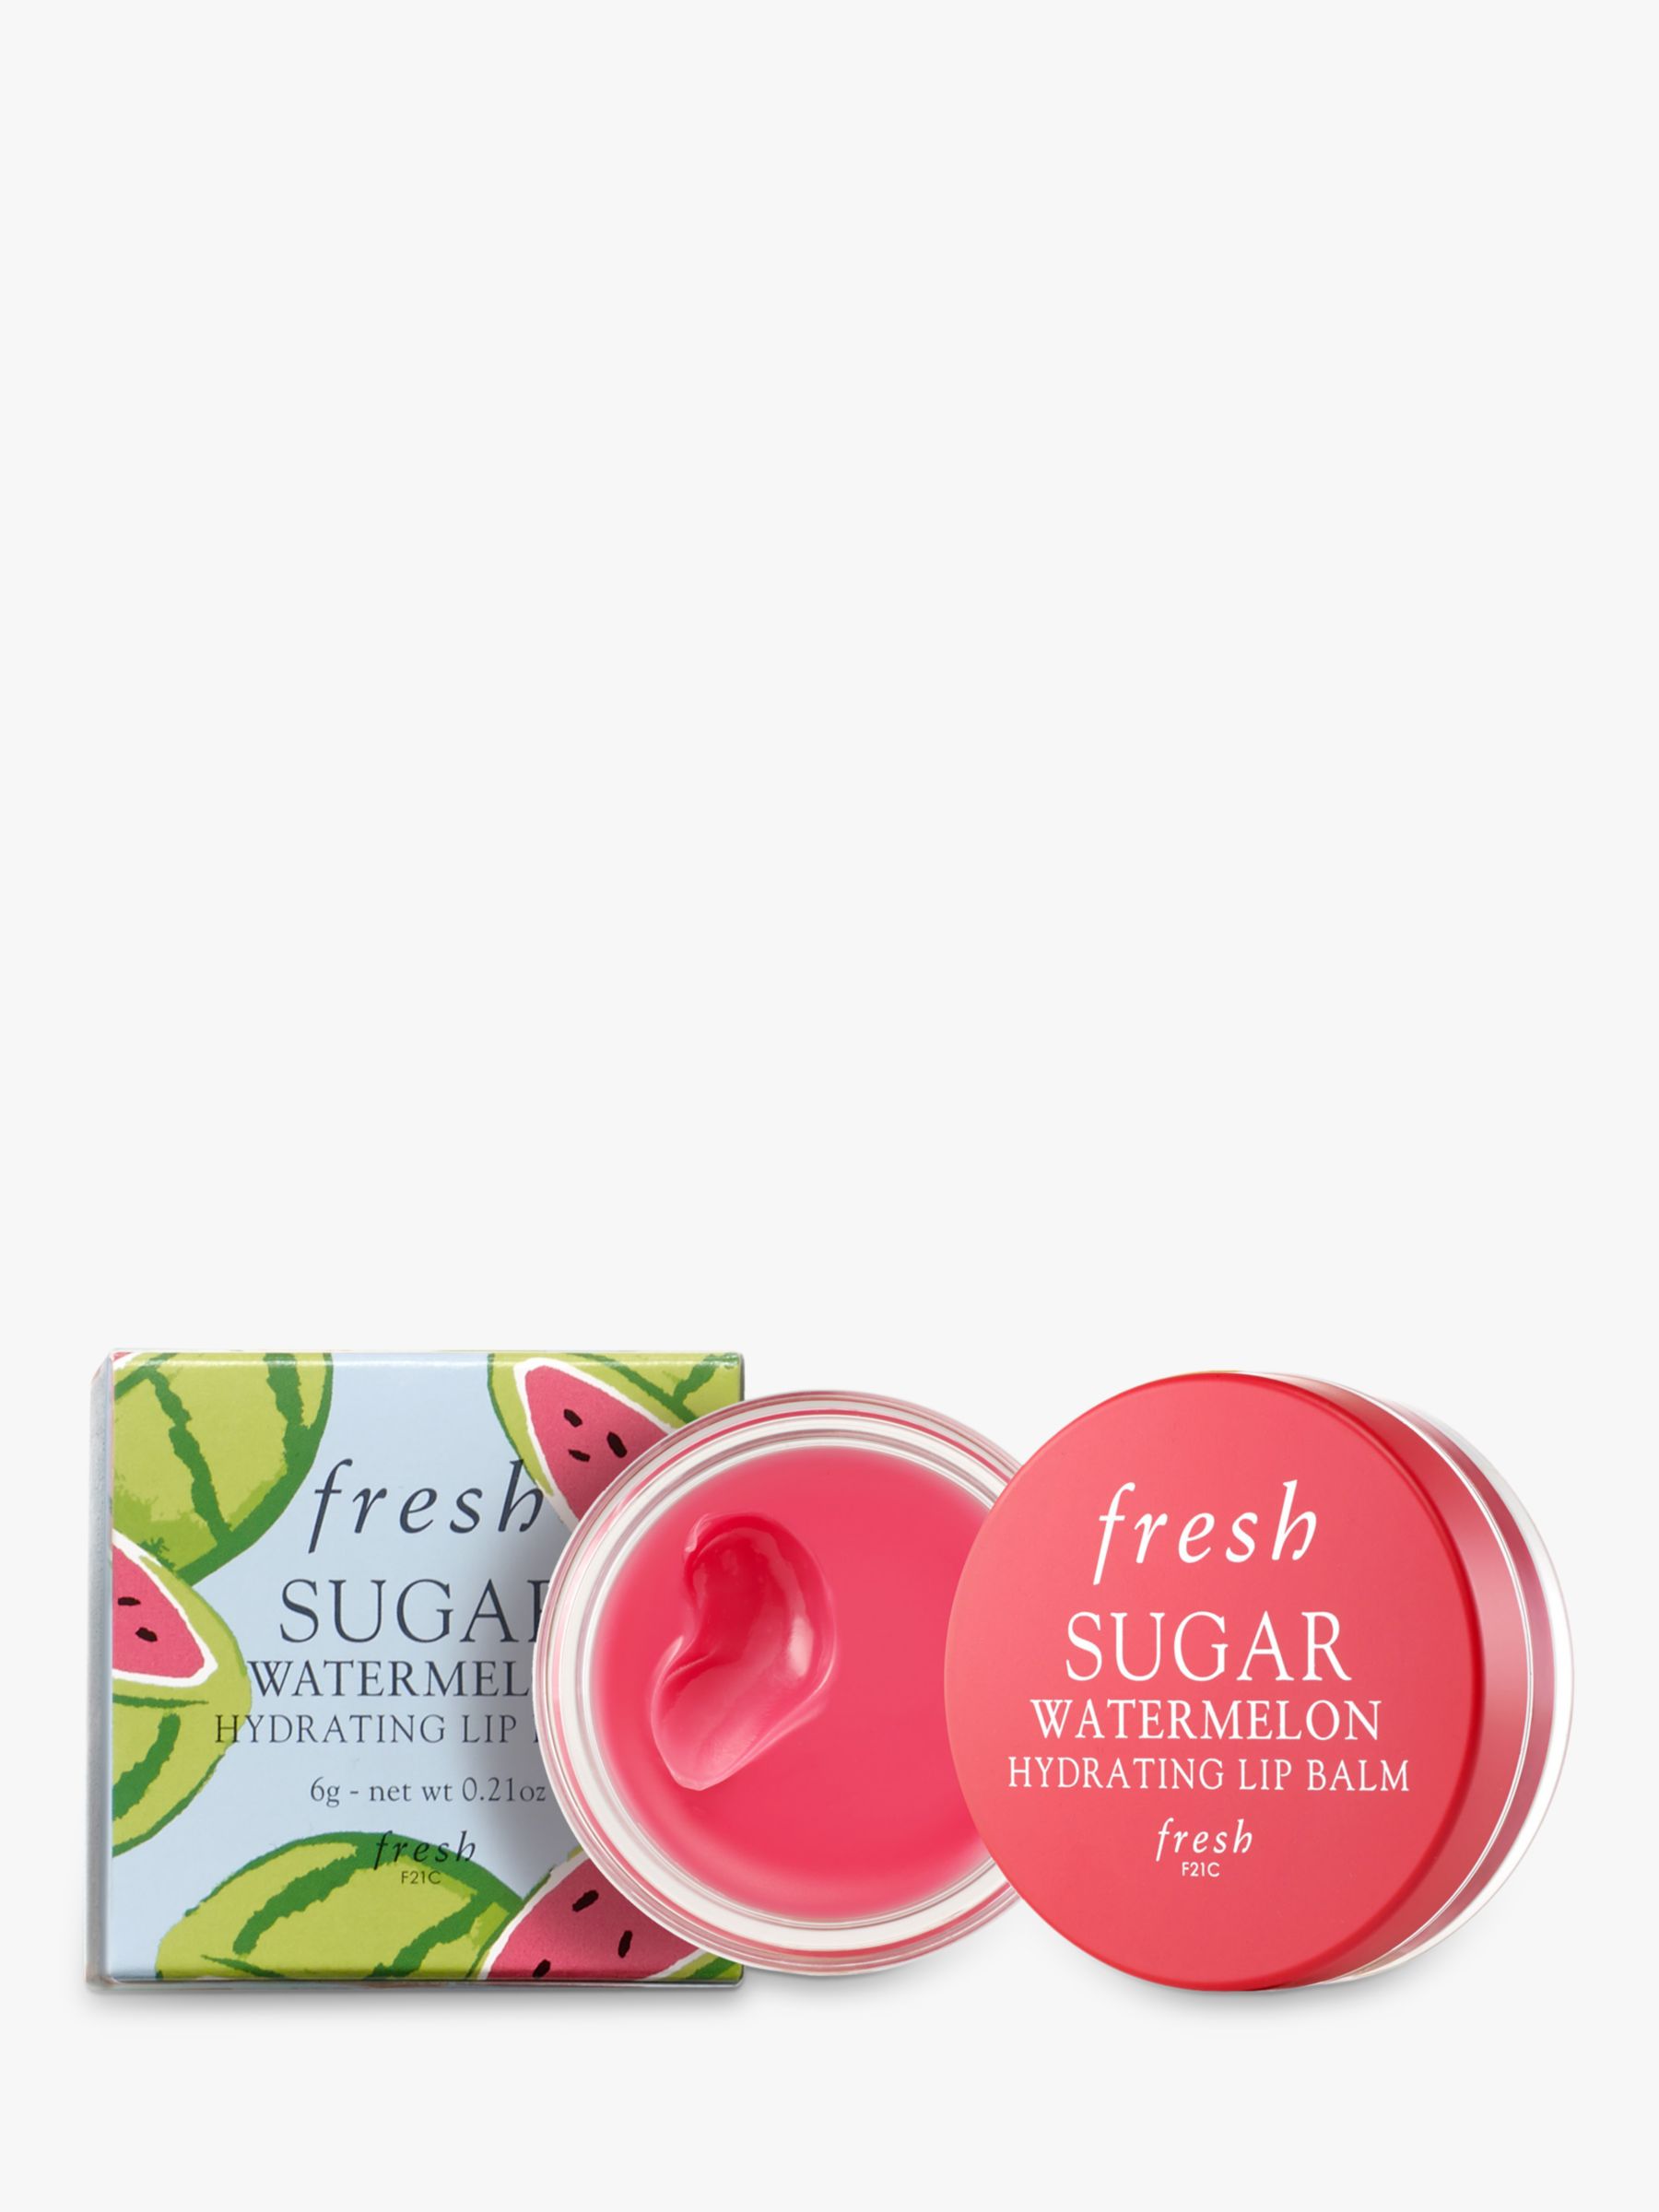 Fresh Sugar Hydrating Lip Balm, Watermelon